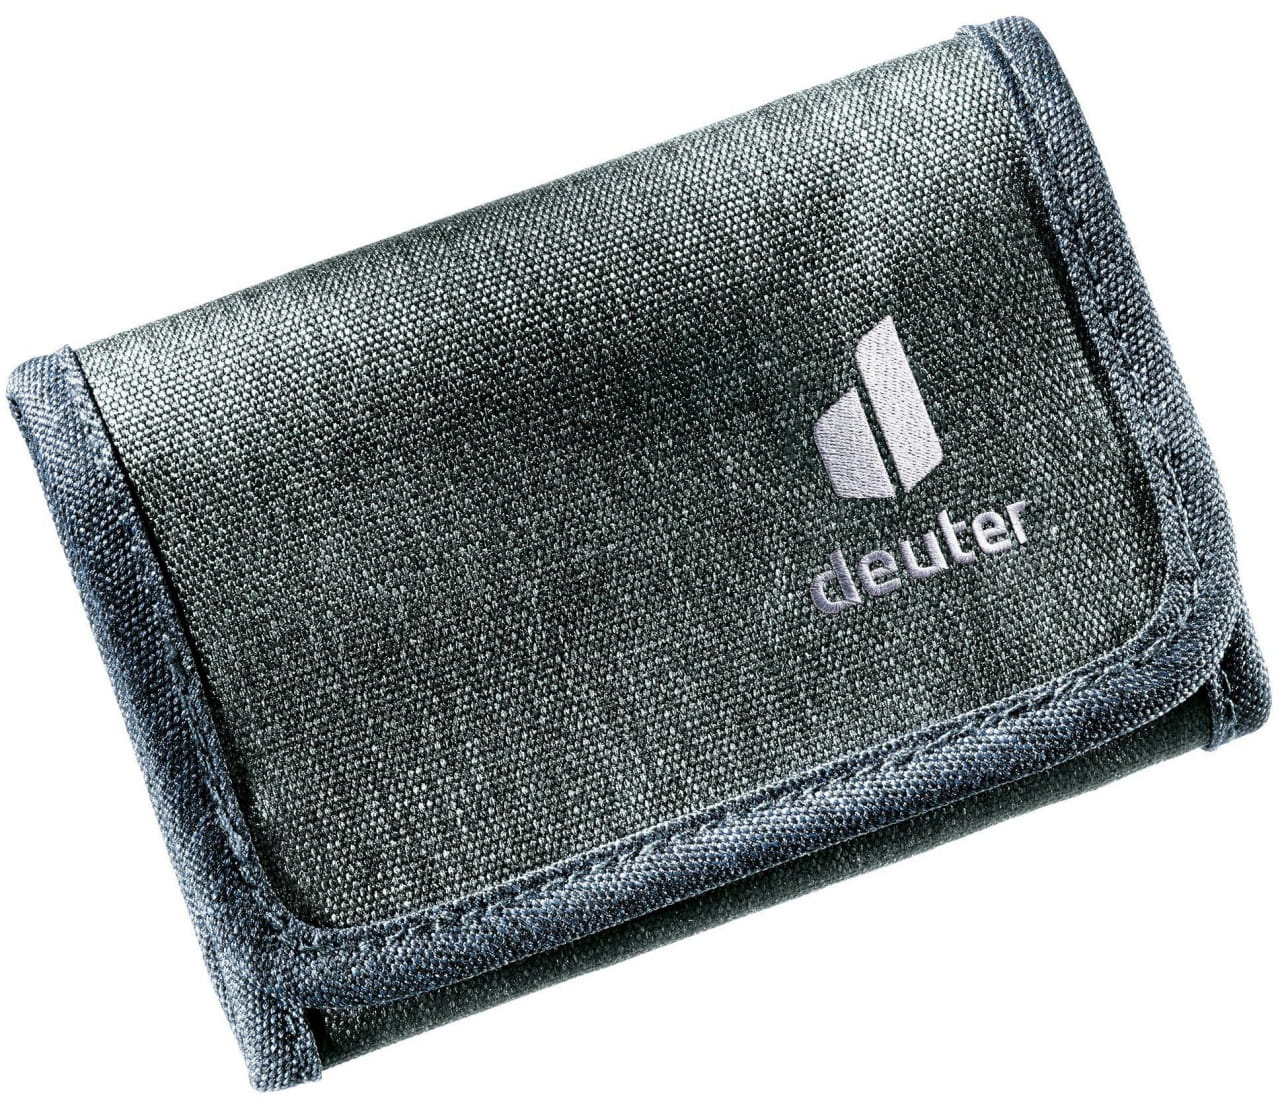 Peněženka Deuter Travel Wallet